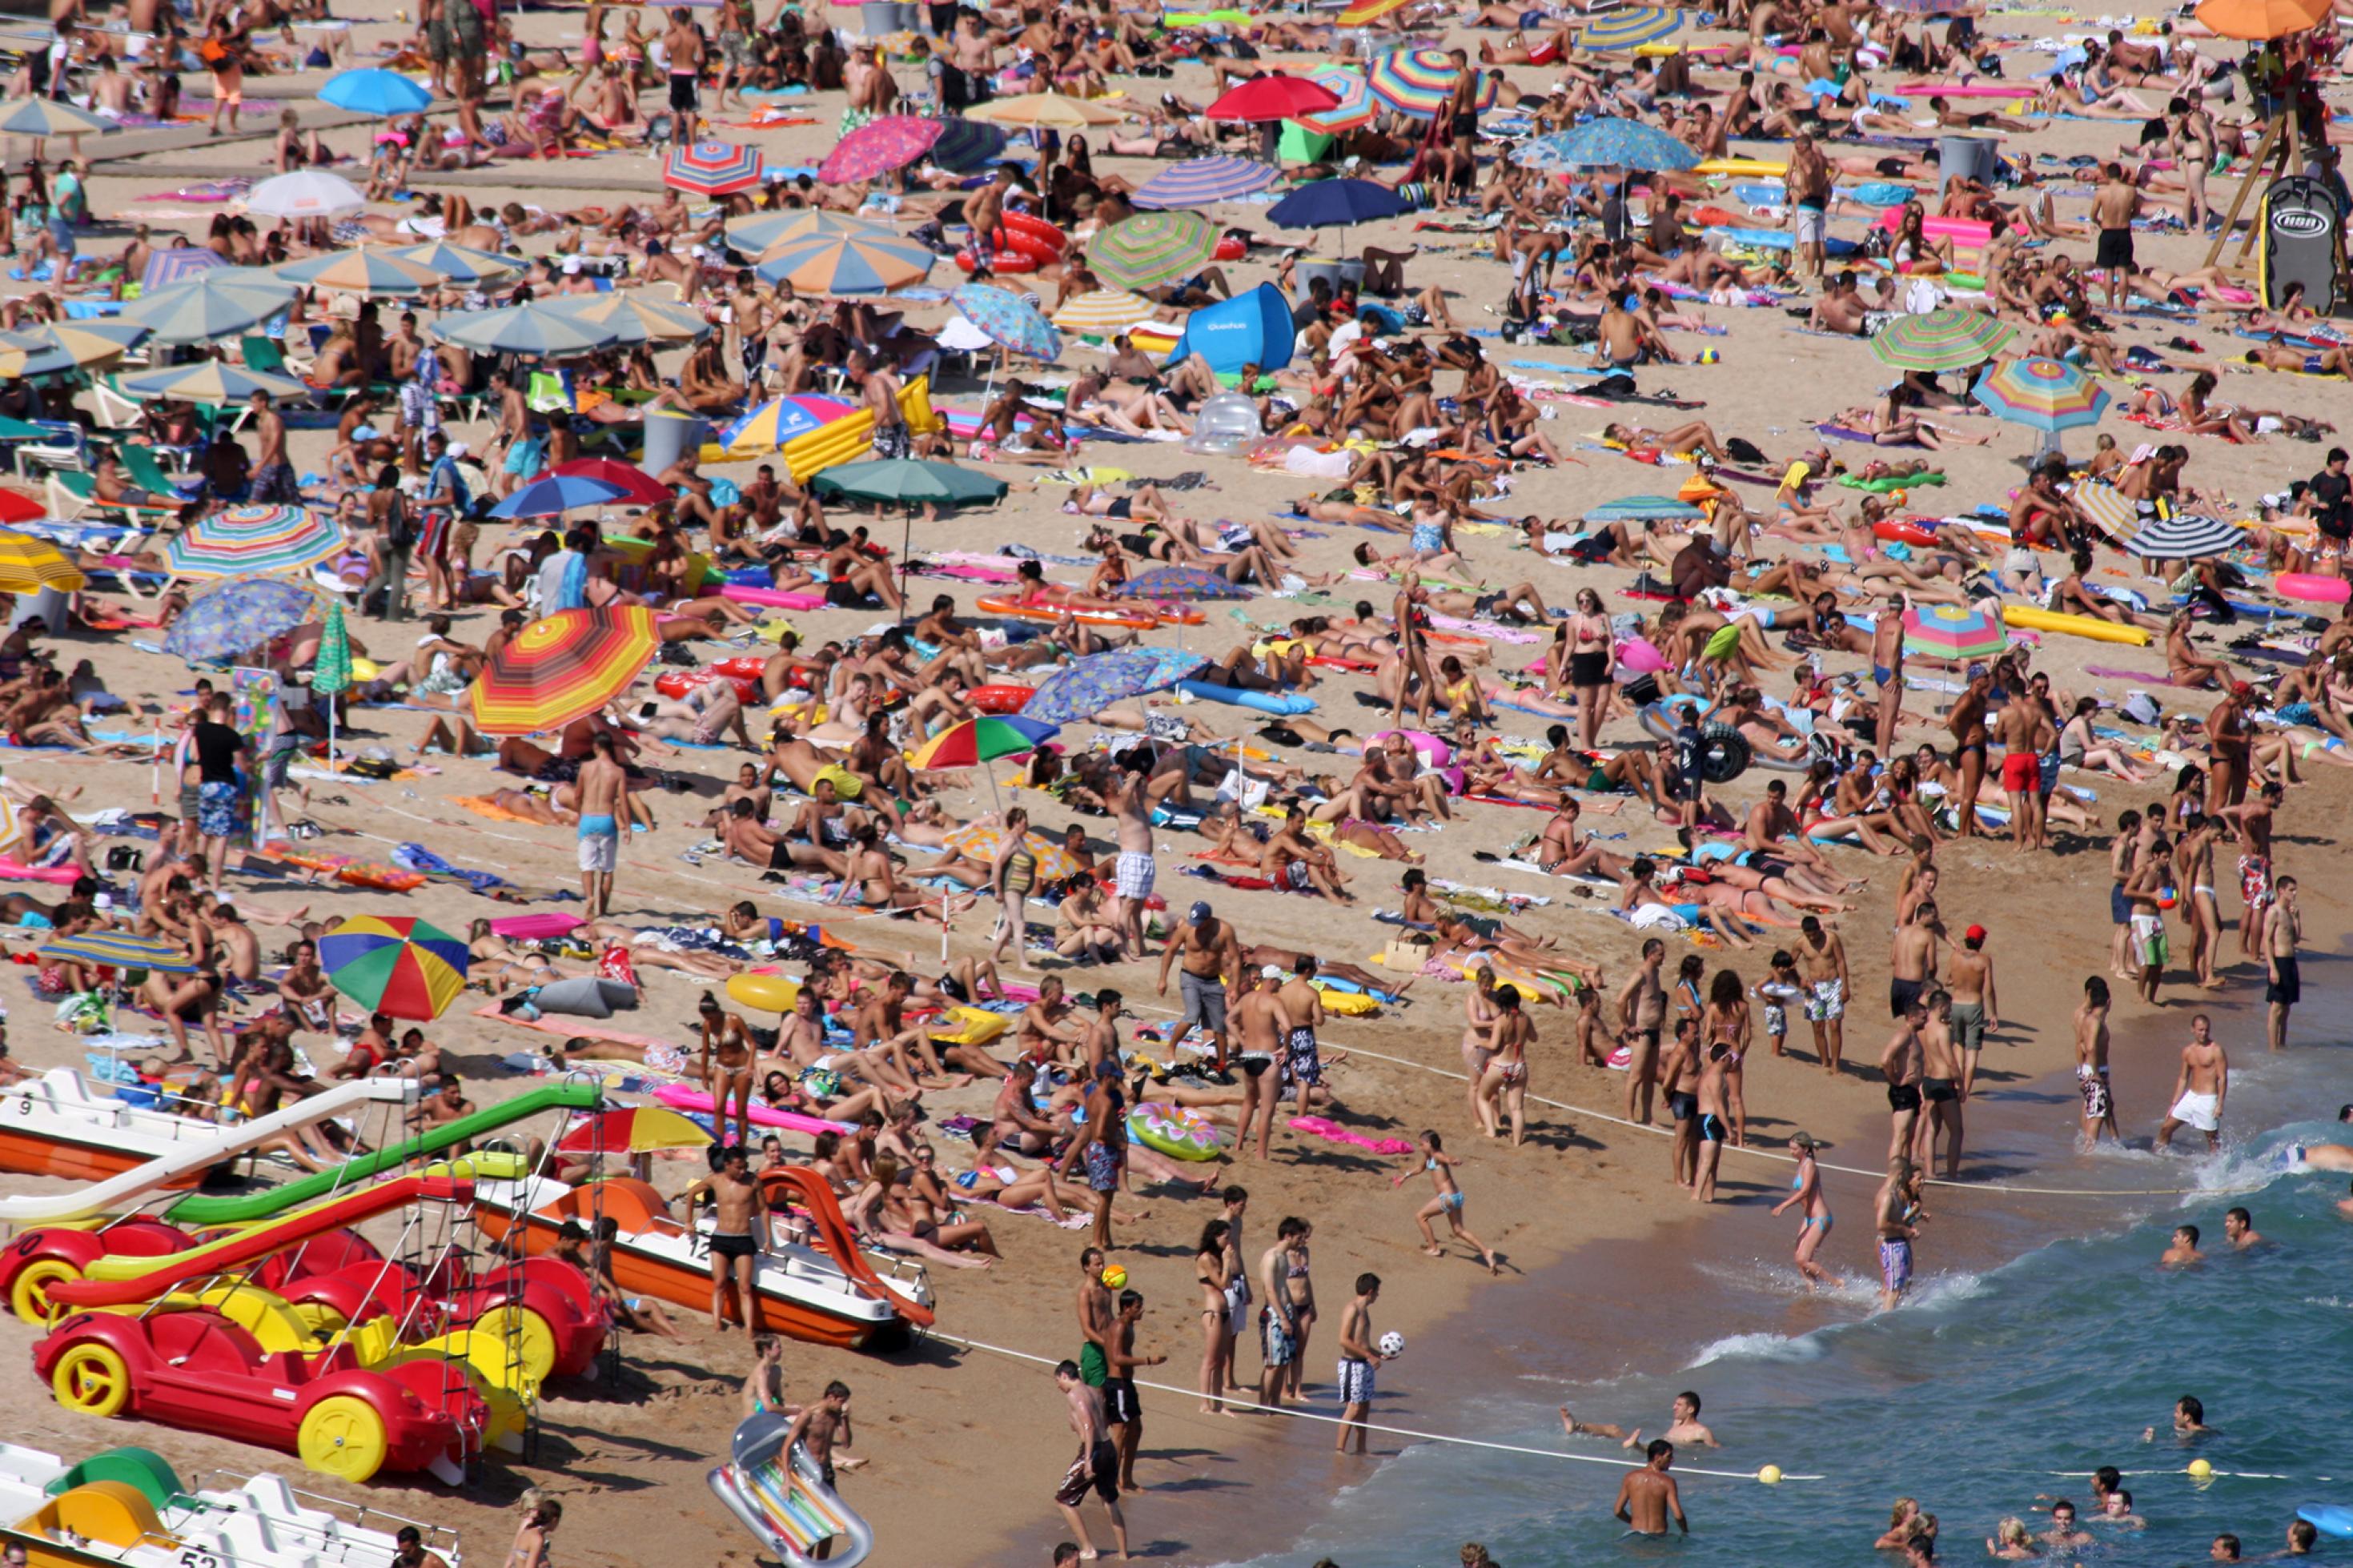 Prall mit Menschen gefüllter Strand am Meer mit Sonnenschirmen.